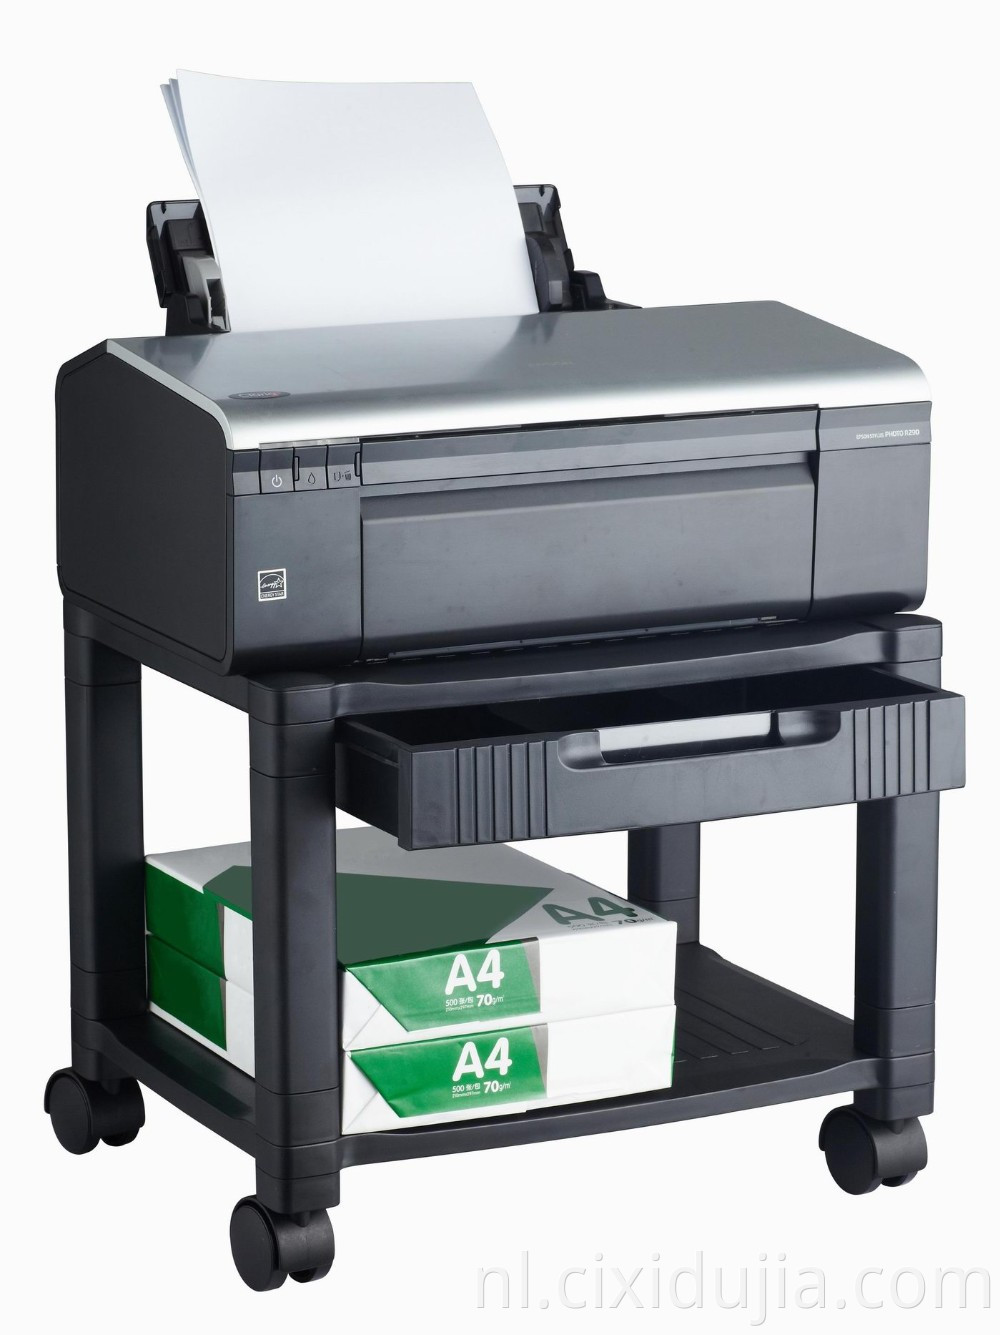  Printer Stand Cart Machine Stand